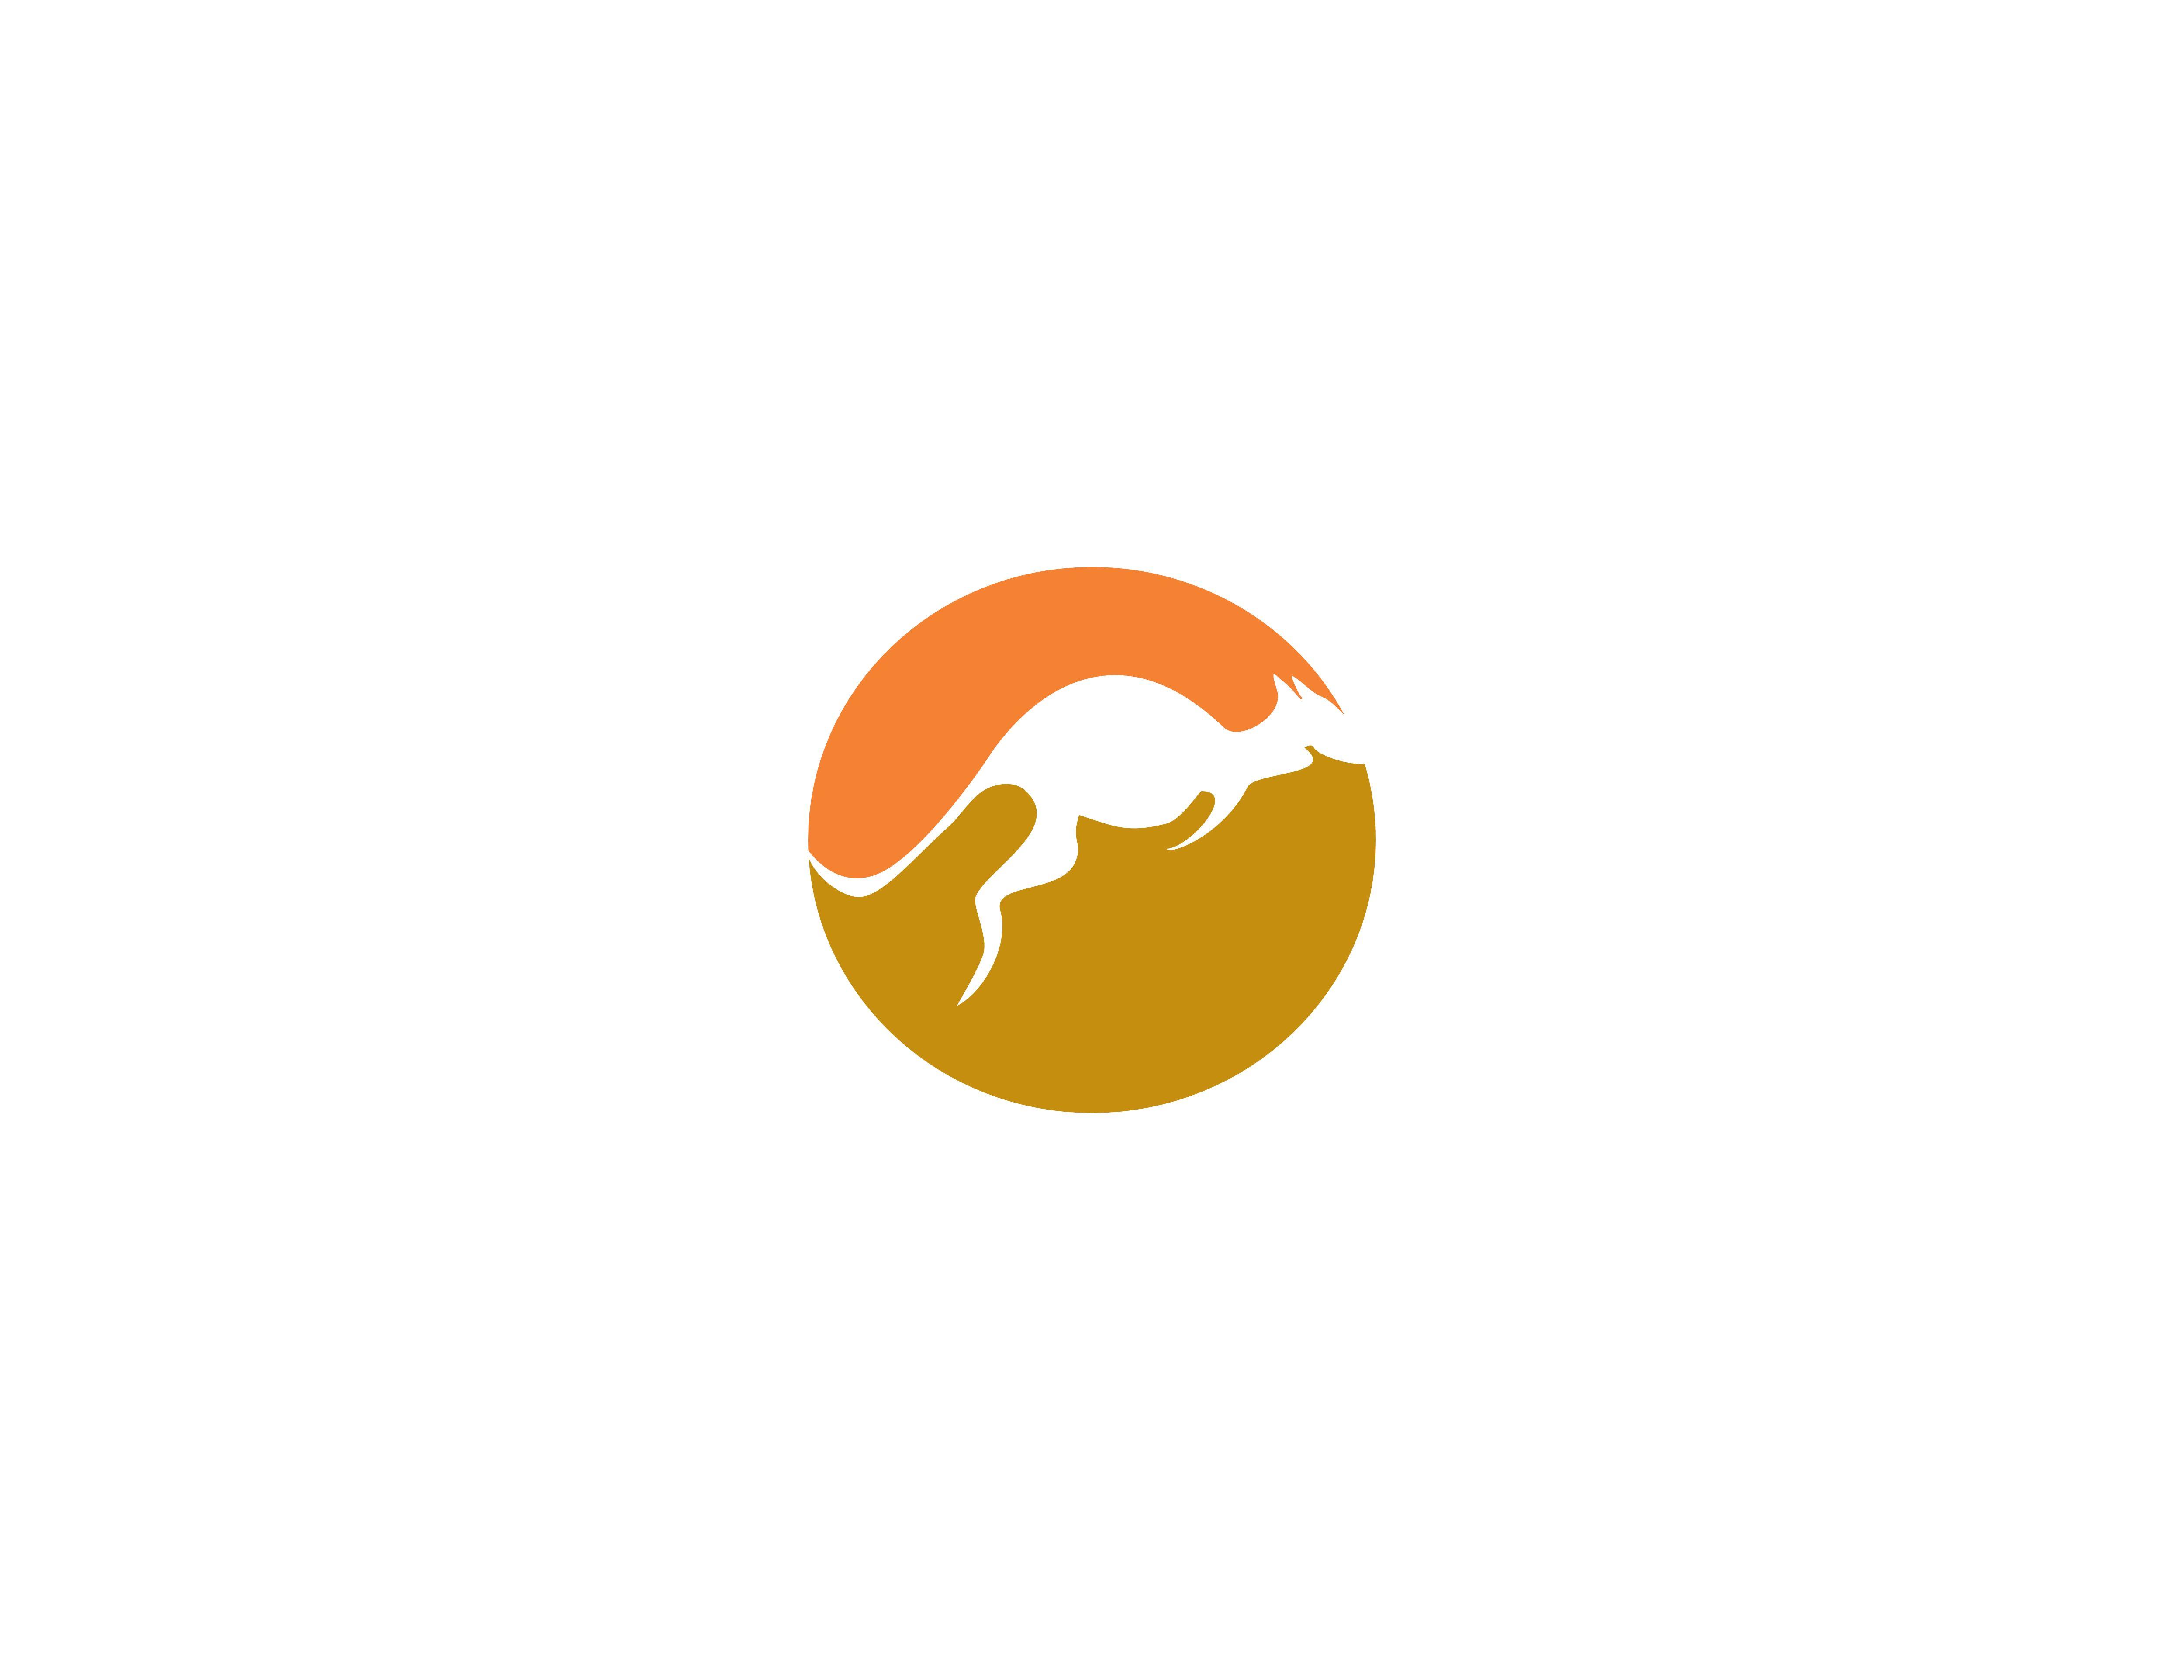 No Kangaroo Logo - Kangaroo logo Graphic by meisuseno - Creative Fabrica